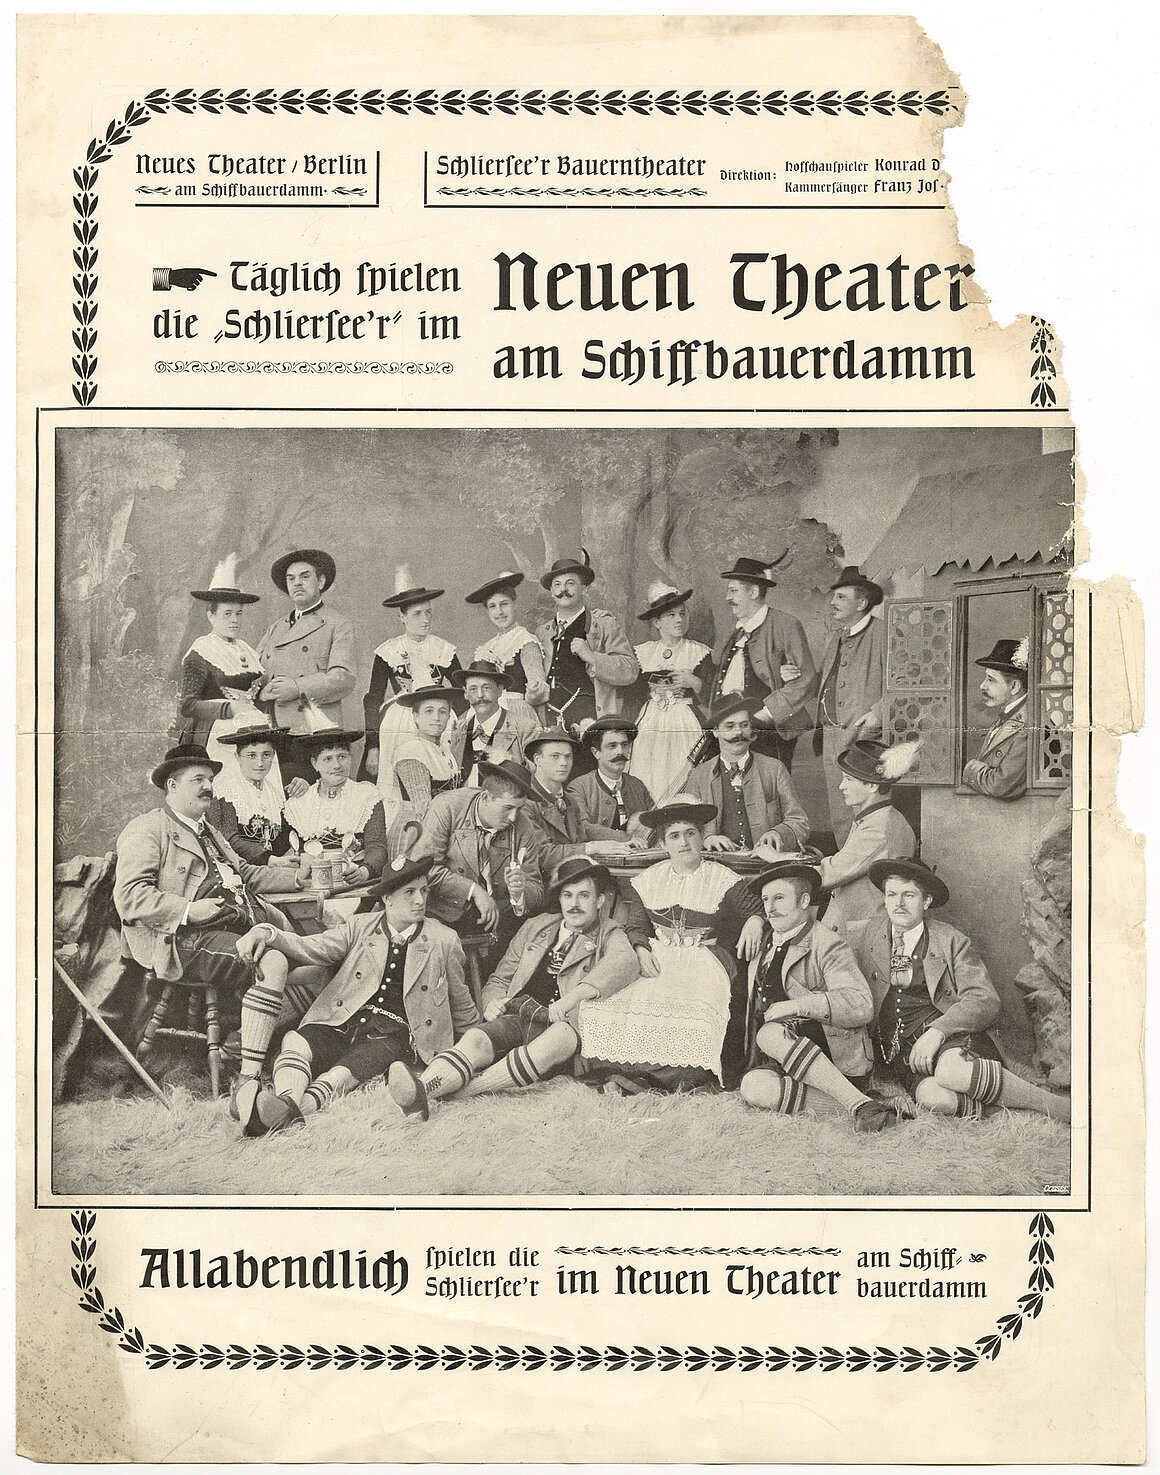 Schlierseer Bauerntheater im Neuen Theater am Schiffbauerdamm, Berlin, um 1895